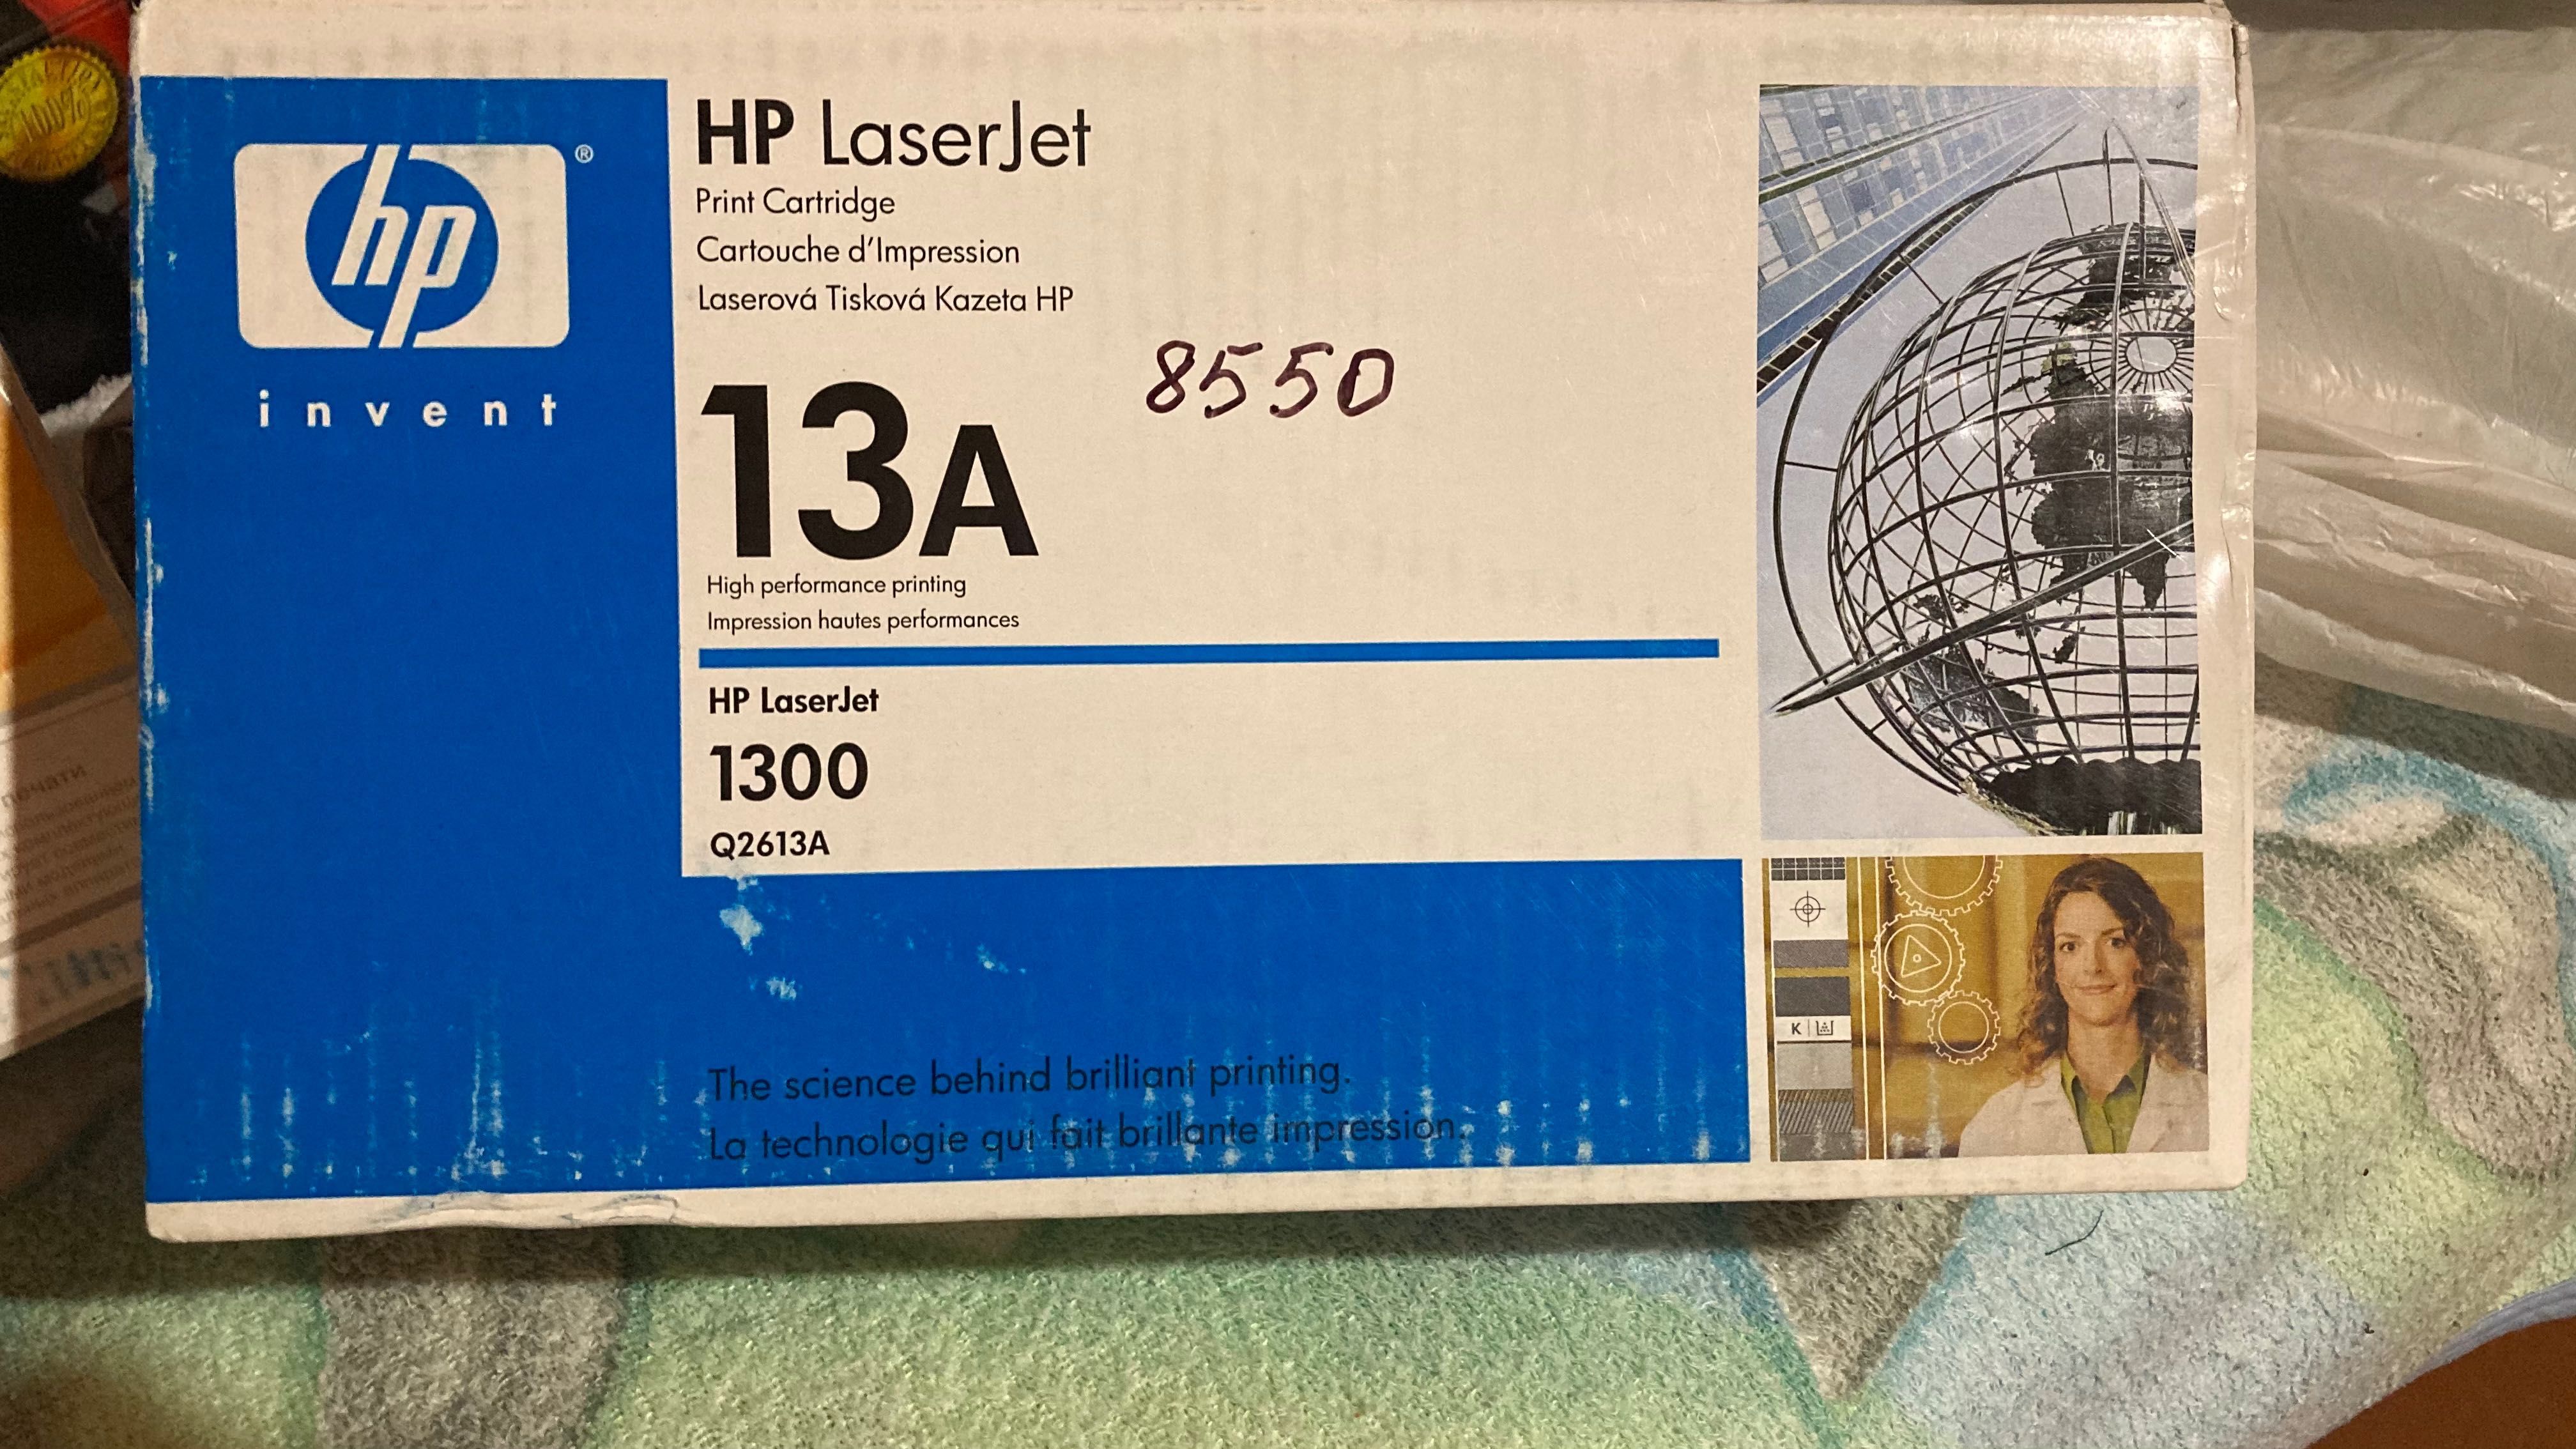 Картридж для HP LJ 1300